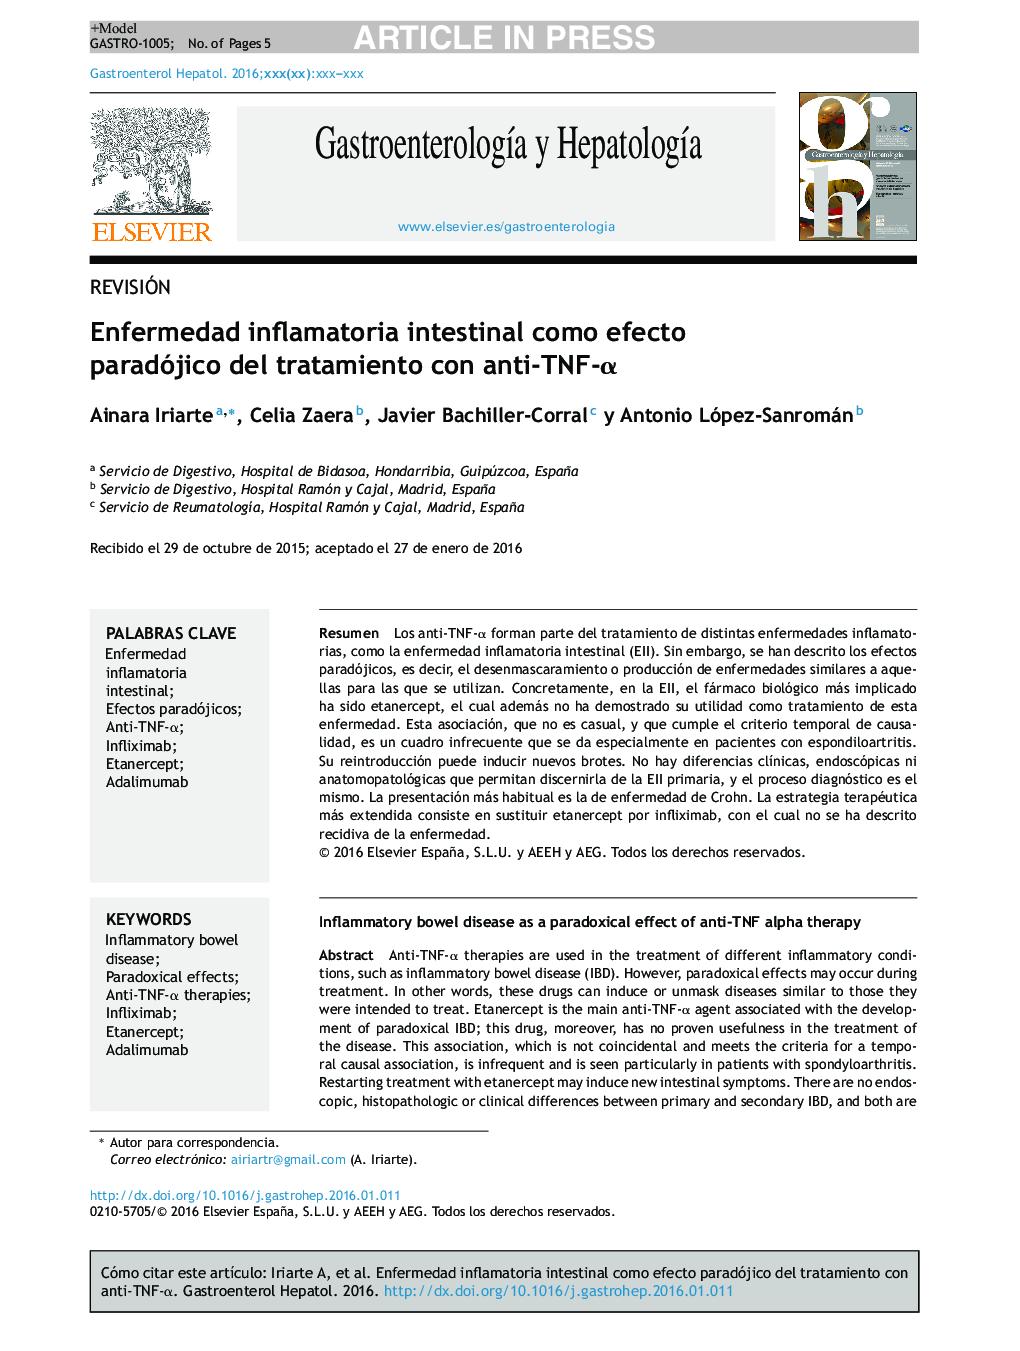 Enfermedad inflamatoria intestinal como efecto paradójico del tratamiento con anti-TNF-Î±